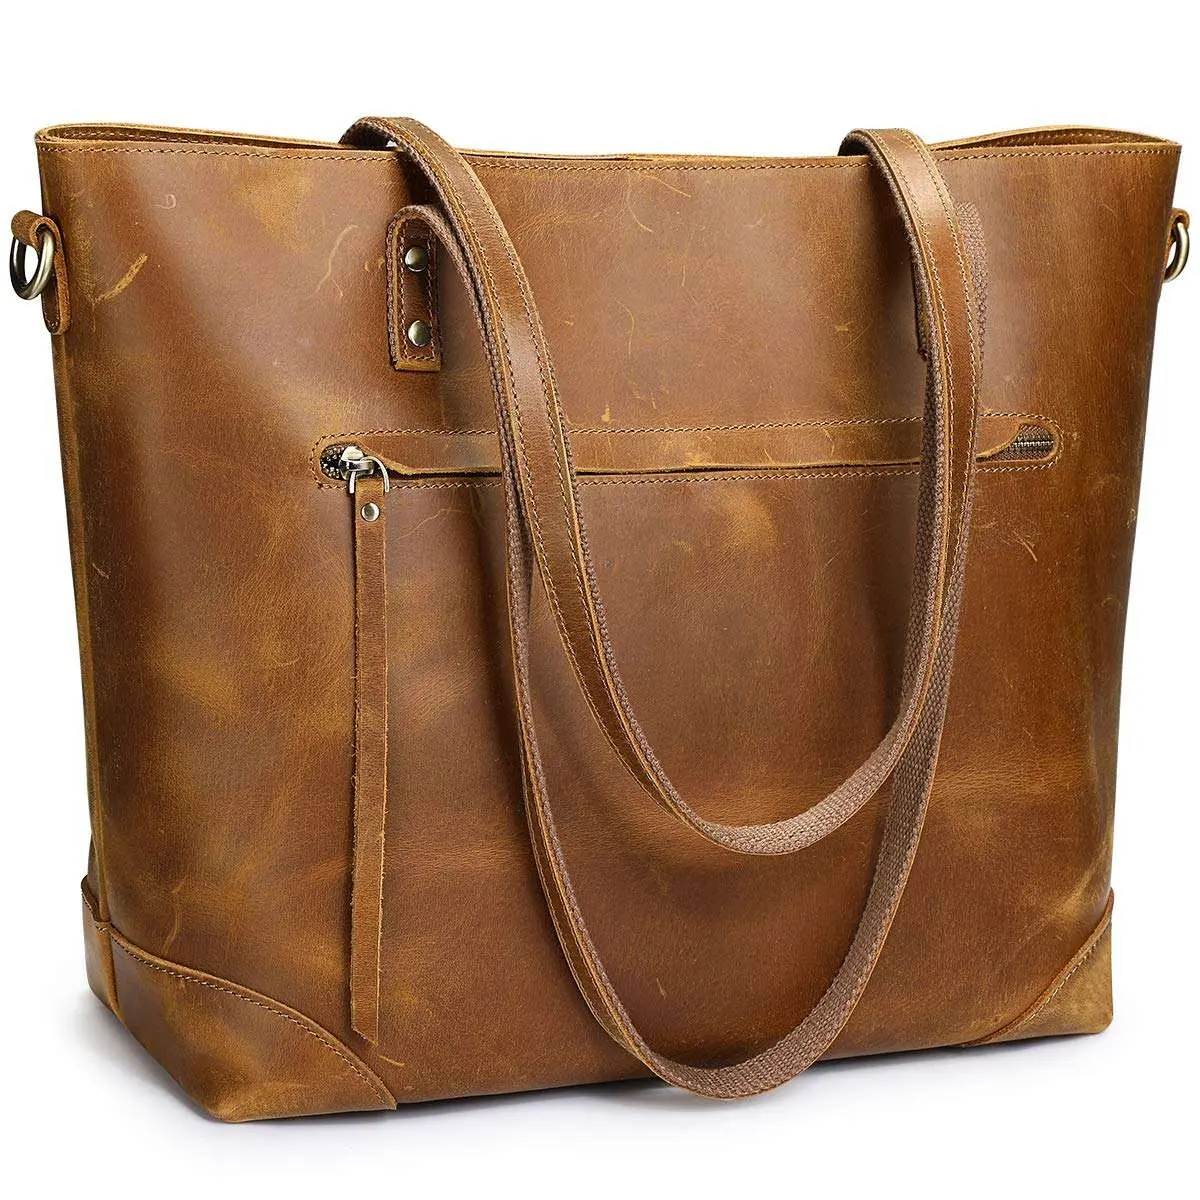 Totebag Vintage Genuine Leather Shoulder Bag for Women Work Tote Bag with Back Zipper Pocket Large Handbag Ladies Purse